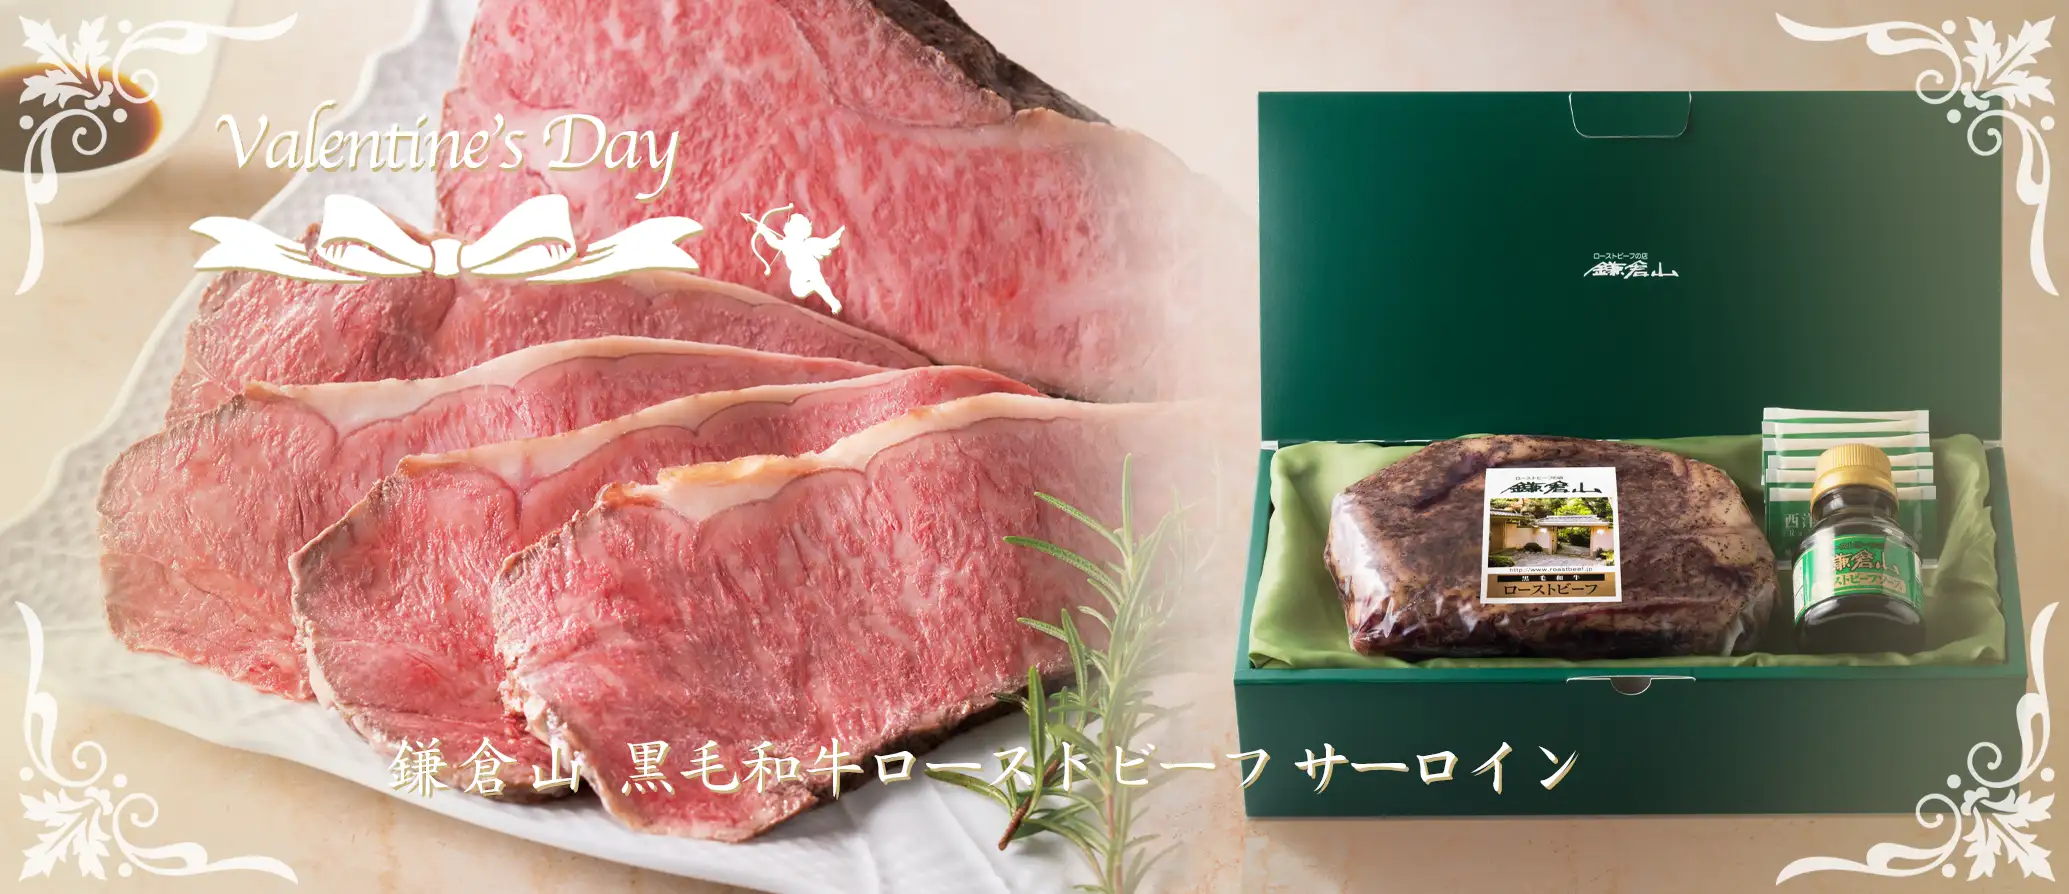 鎌倉山 肉おせち料理 広告バナー画像